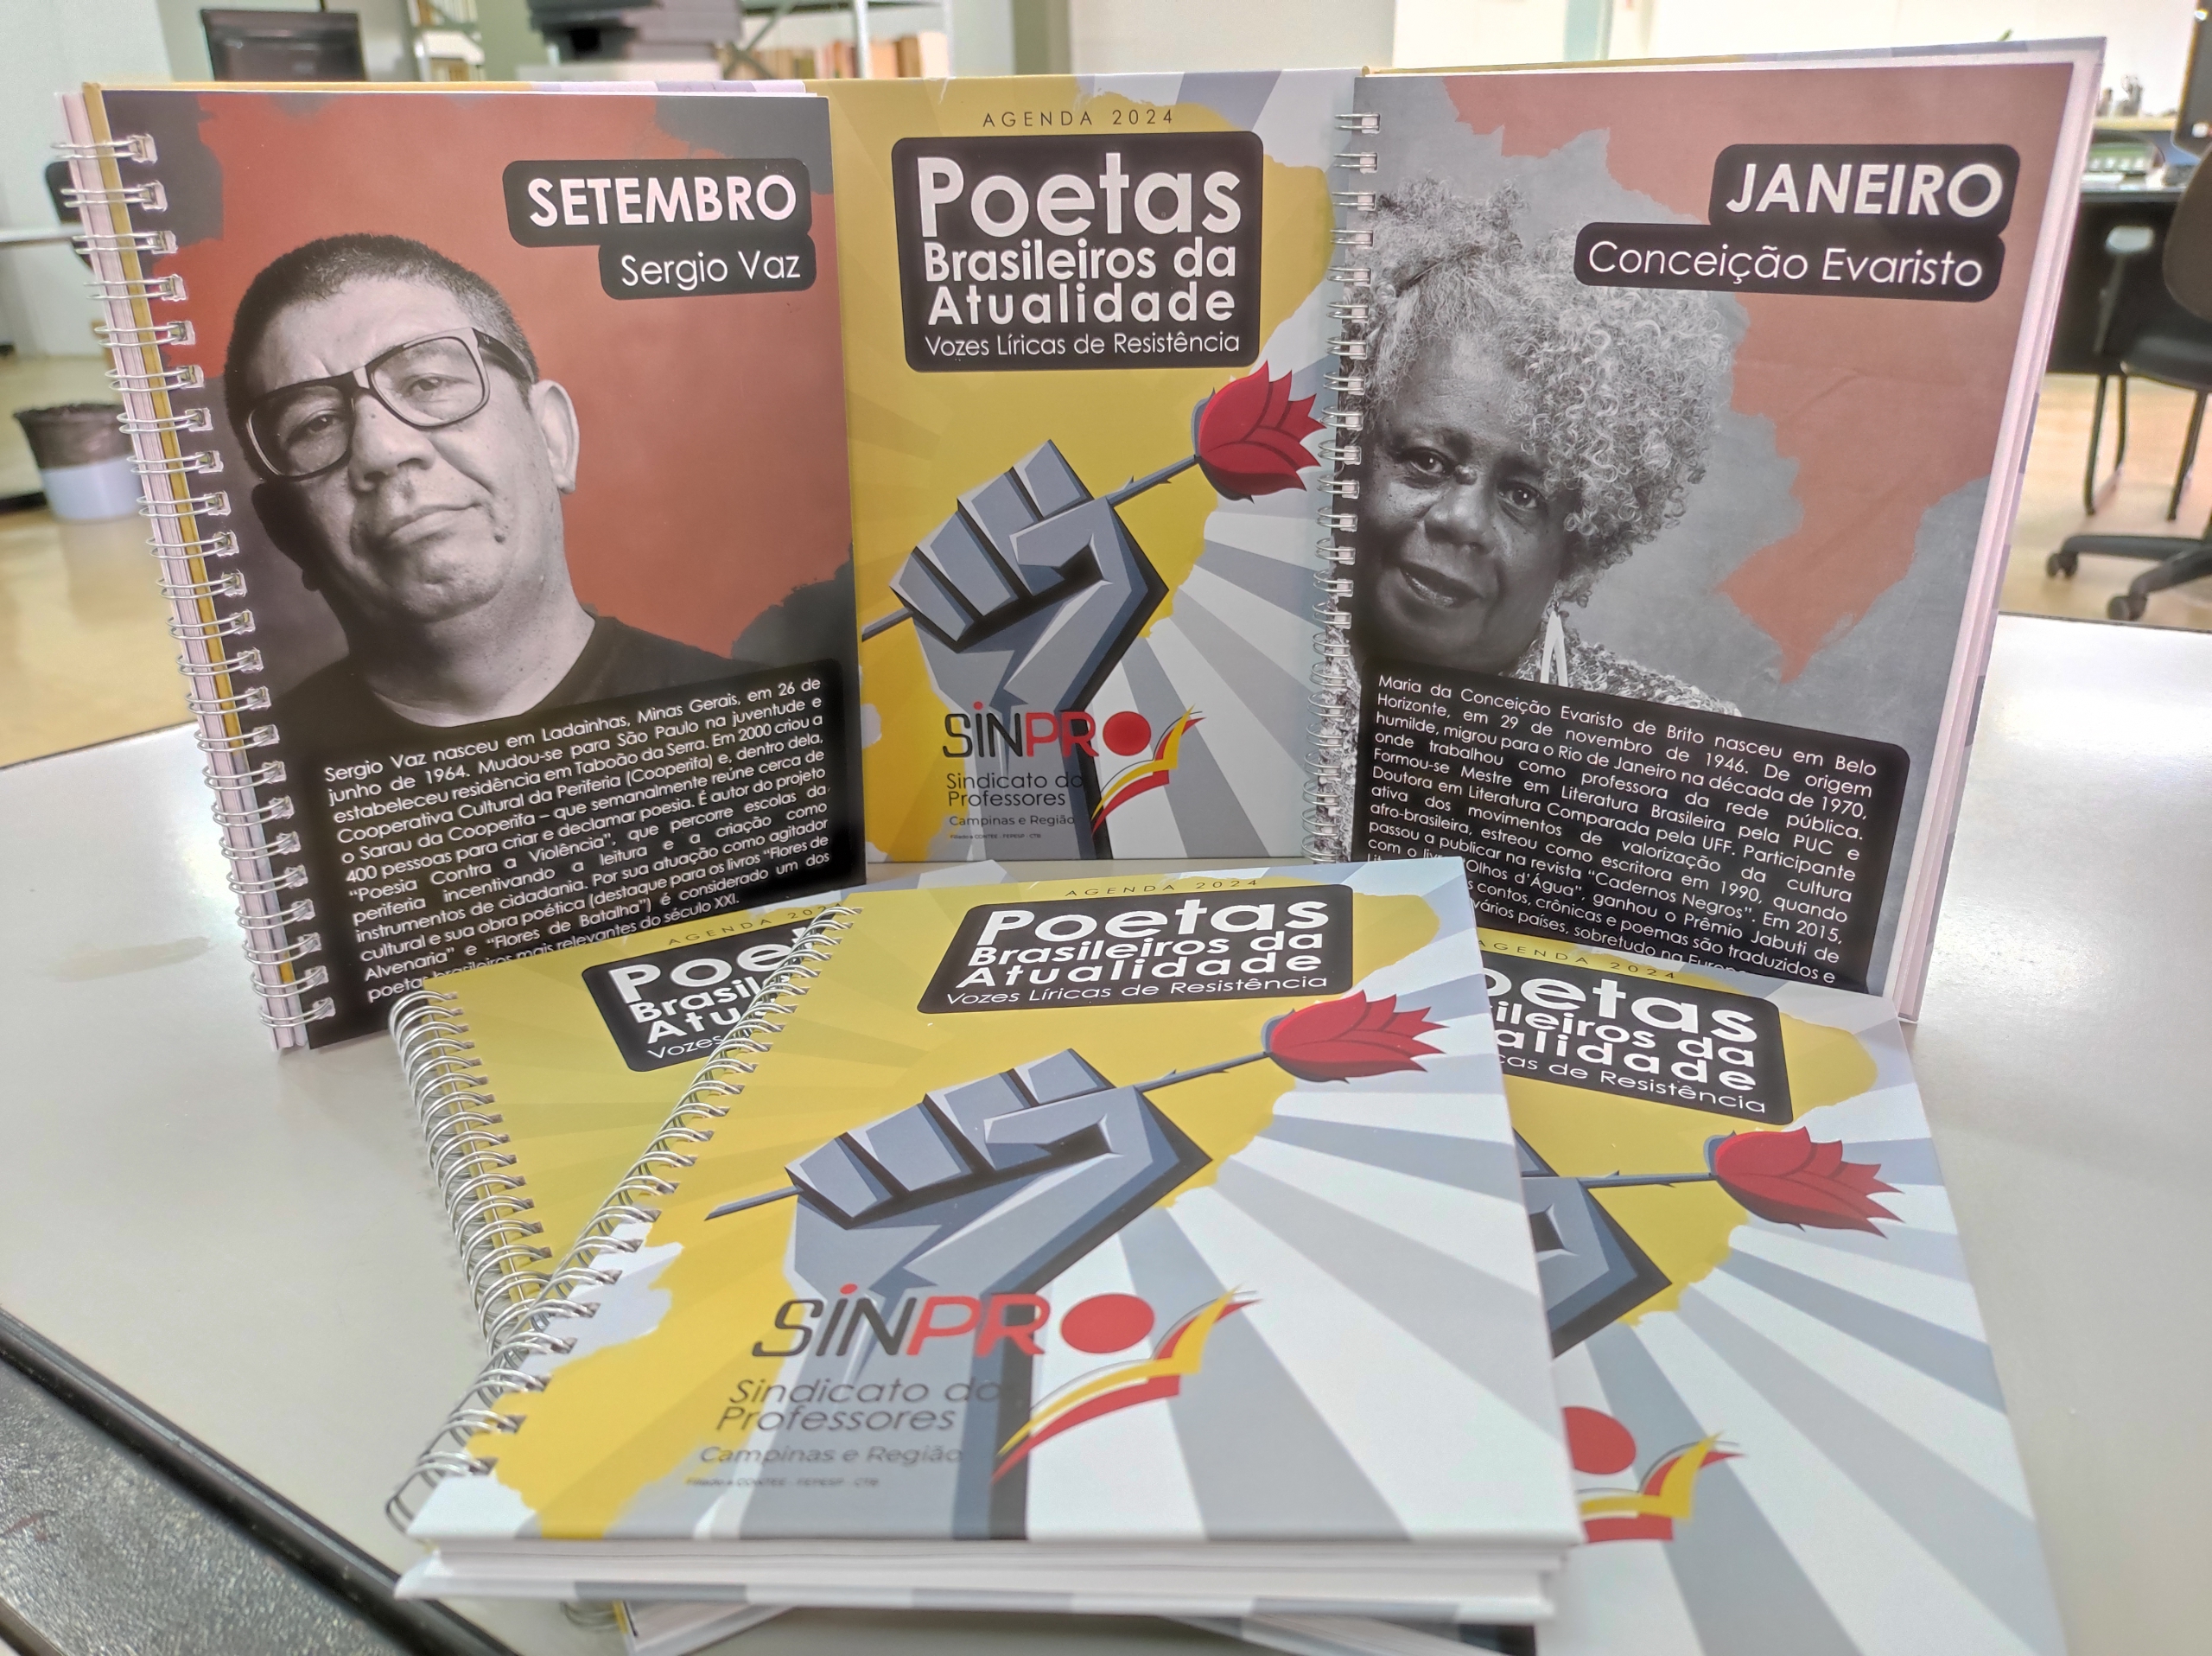 Agenda 2024 do Sinpro Campinas e Região homenageia poetas brasileiros da atualidade